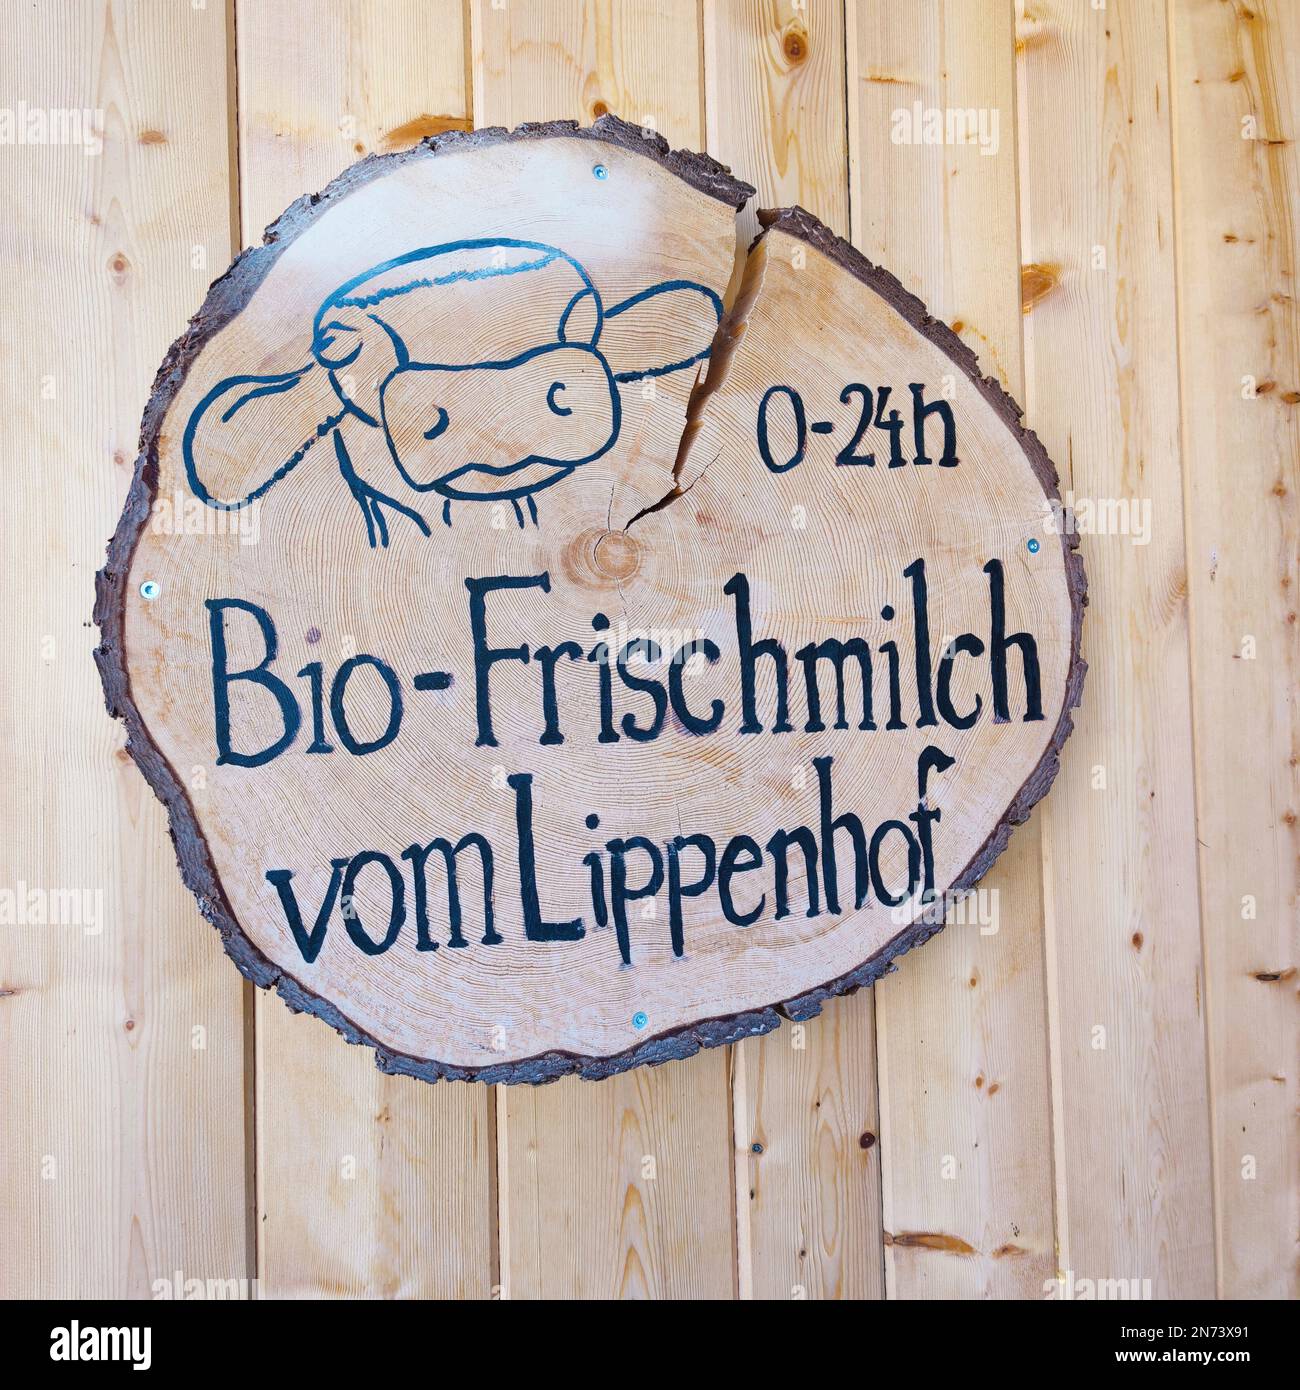 Firma latte fresco biologico da Lippenhof, 24 ore, pubblicità Foto Stock